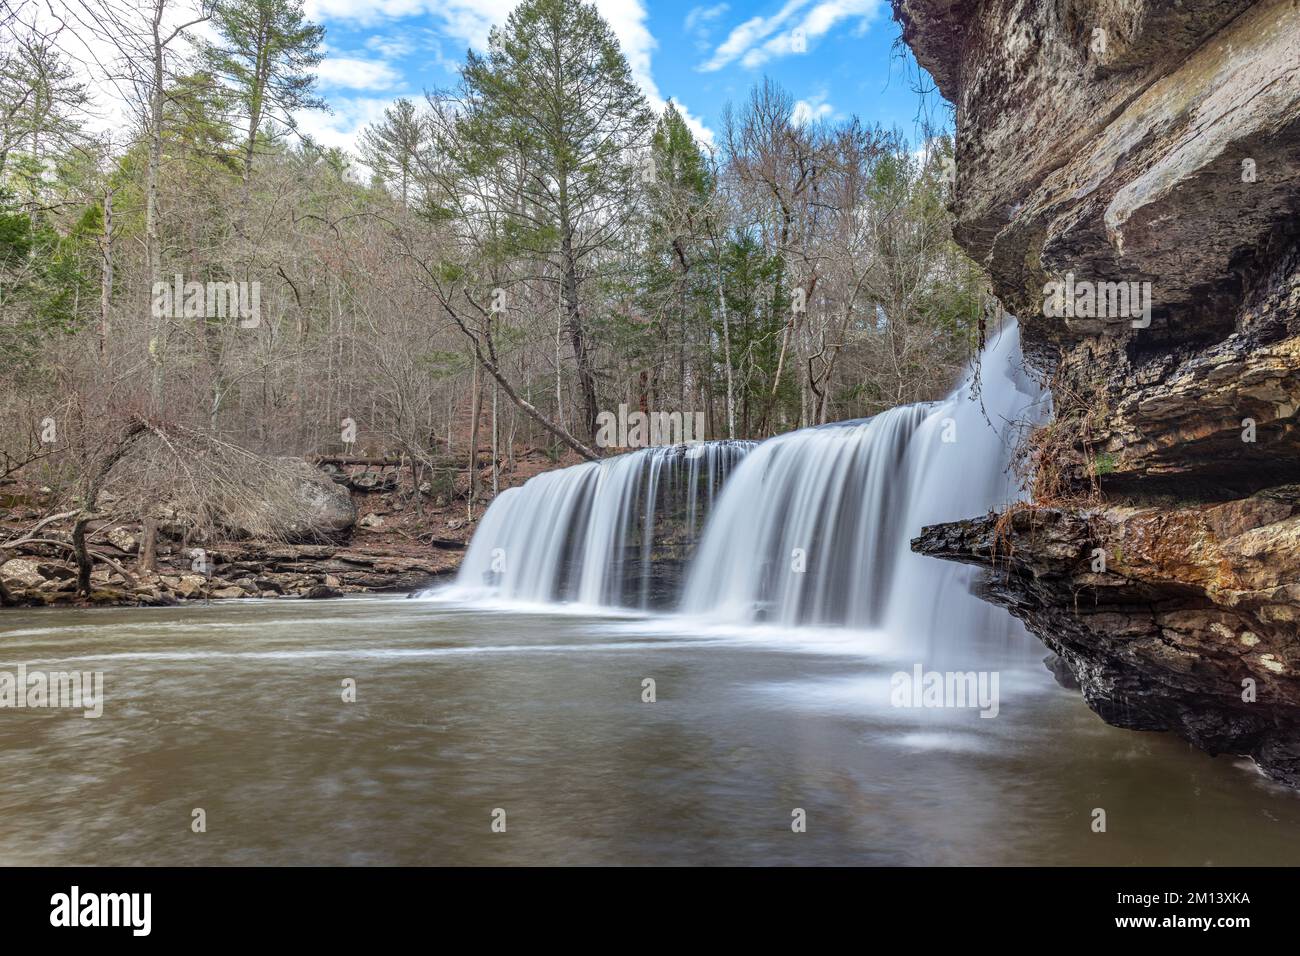 Potter's Falls im Osten von Tennessee auf dem Cumberland Plateau ist ein wunderschönes Wildnisgebiet, das den natürlichen Fluss von Süßwasser zeigt Stockfoto